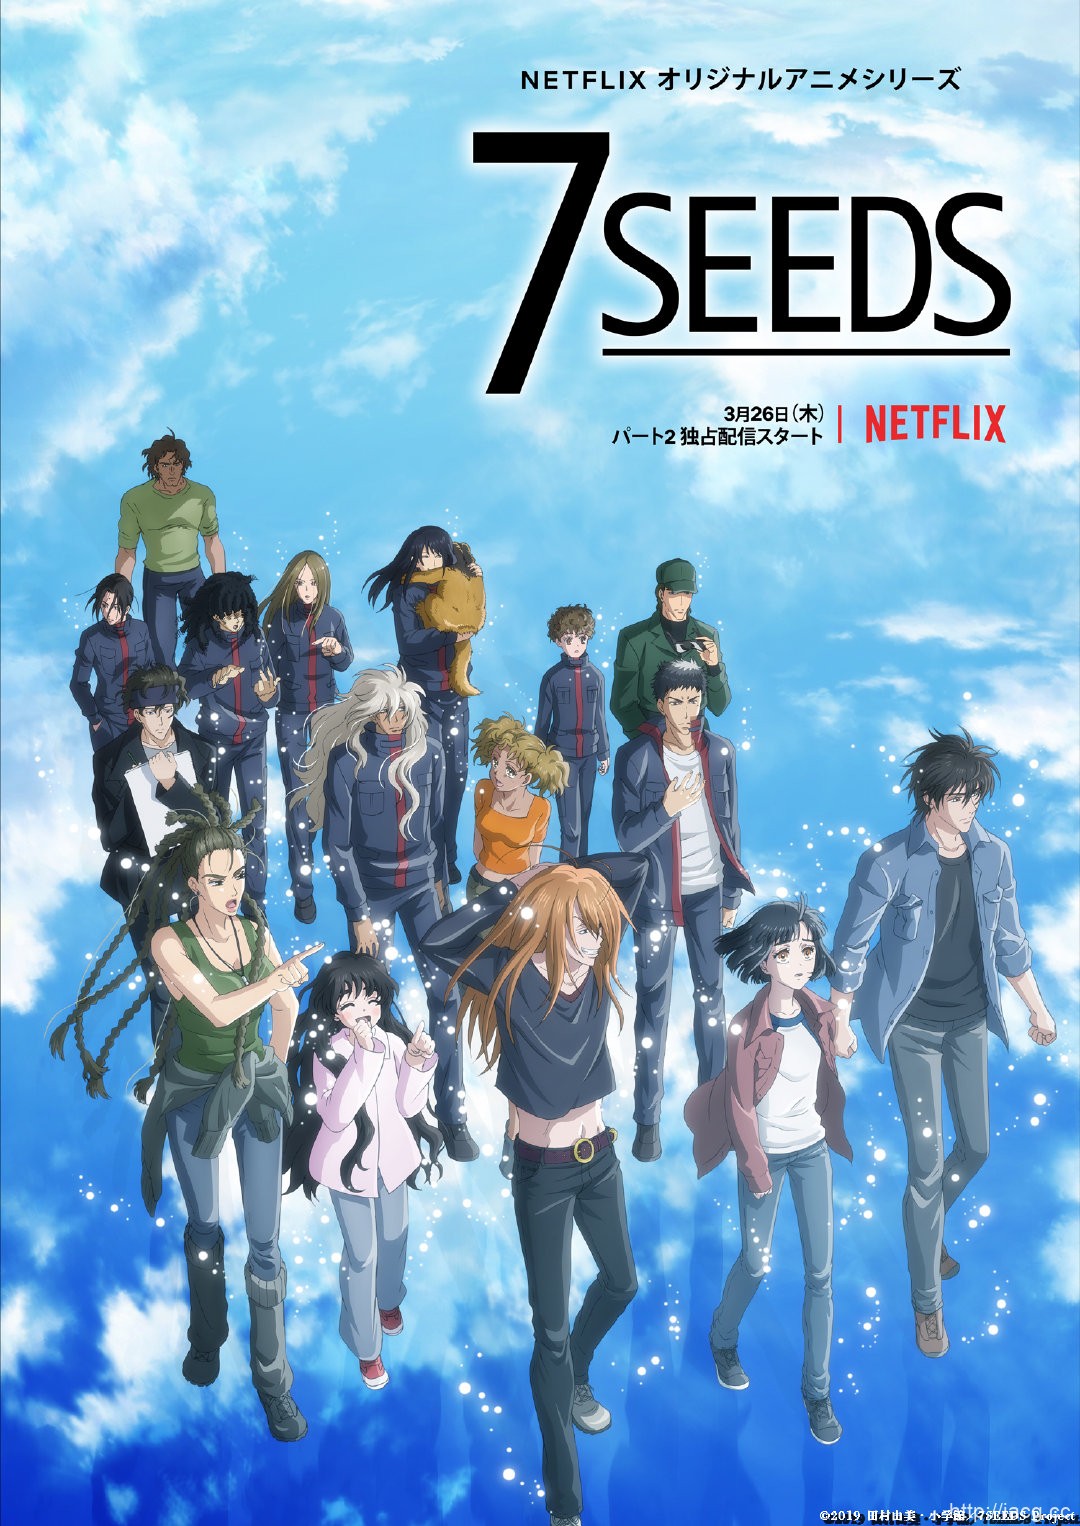 动画「7SEEDS 」第二季确定3月26日上线!